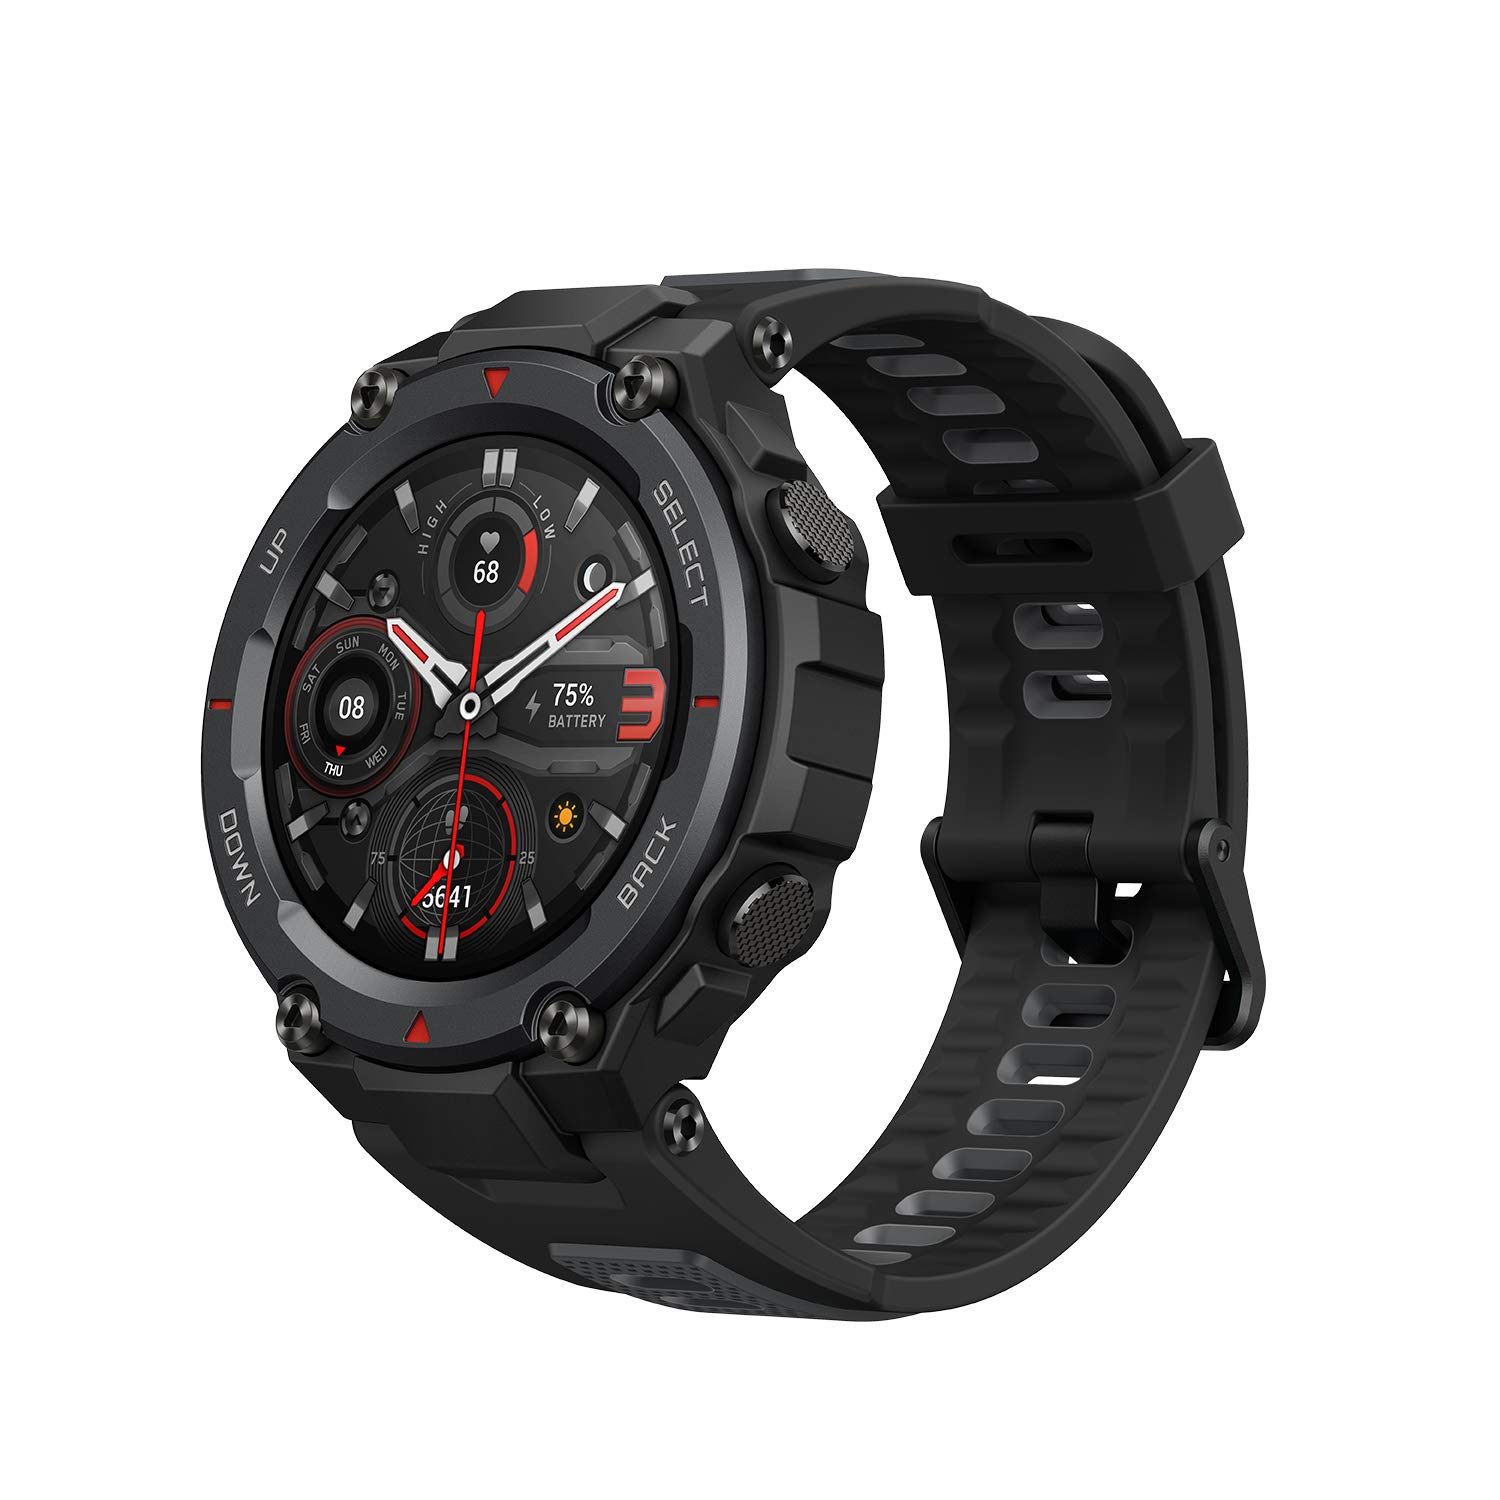 Amazfit T-REX Pro is the best smartwatch under 15000 for outdoor activities